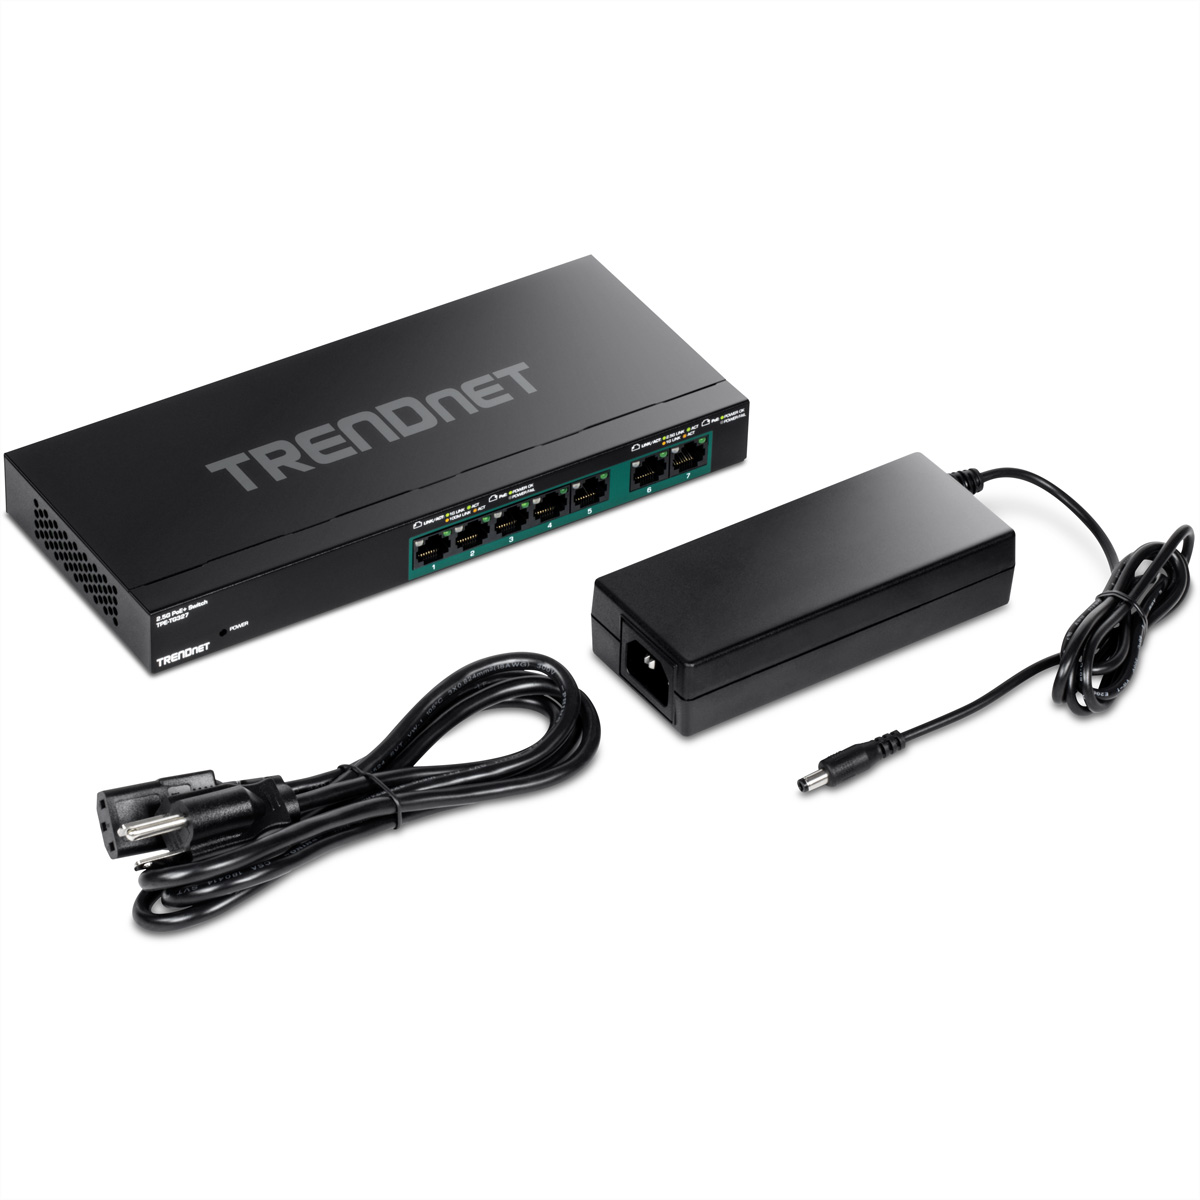 TRENDNET TPE-TG327 Switch Multi-Gigabit PoE+ 7-Port Gigabit Switch PoE